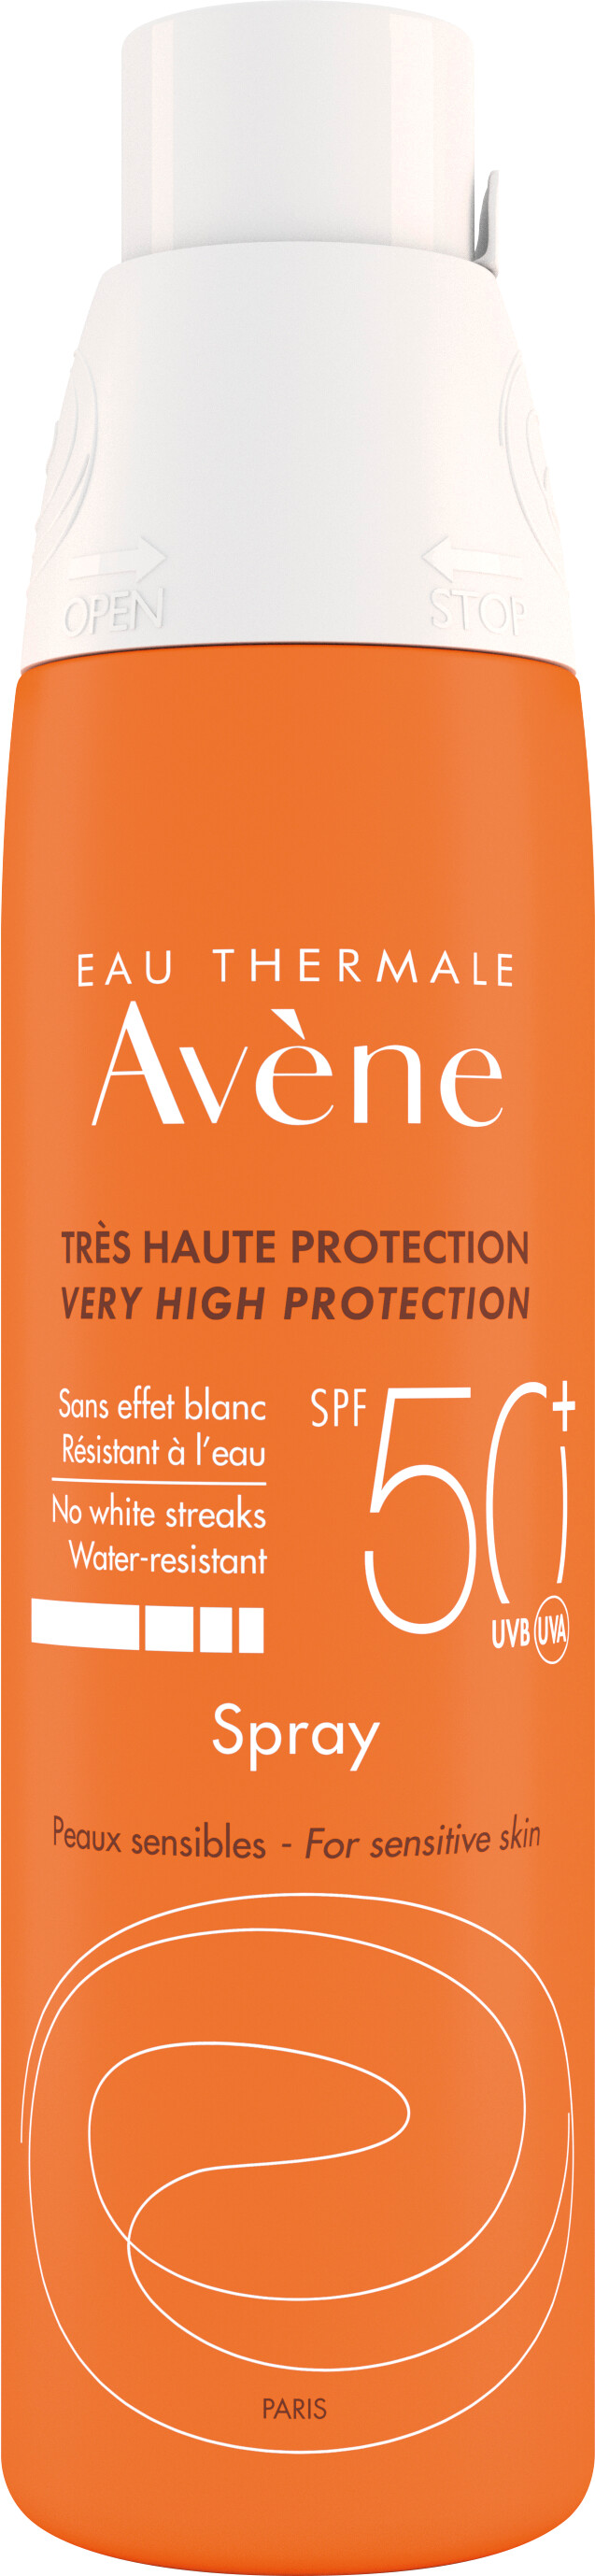 Avene Sun Care Very High Protection Spray SPF50+ 200ml